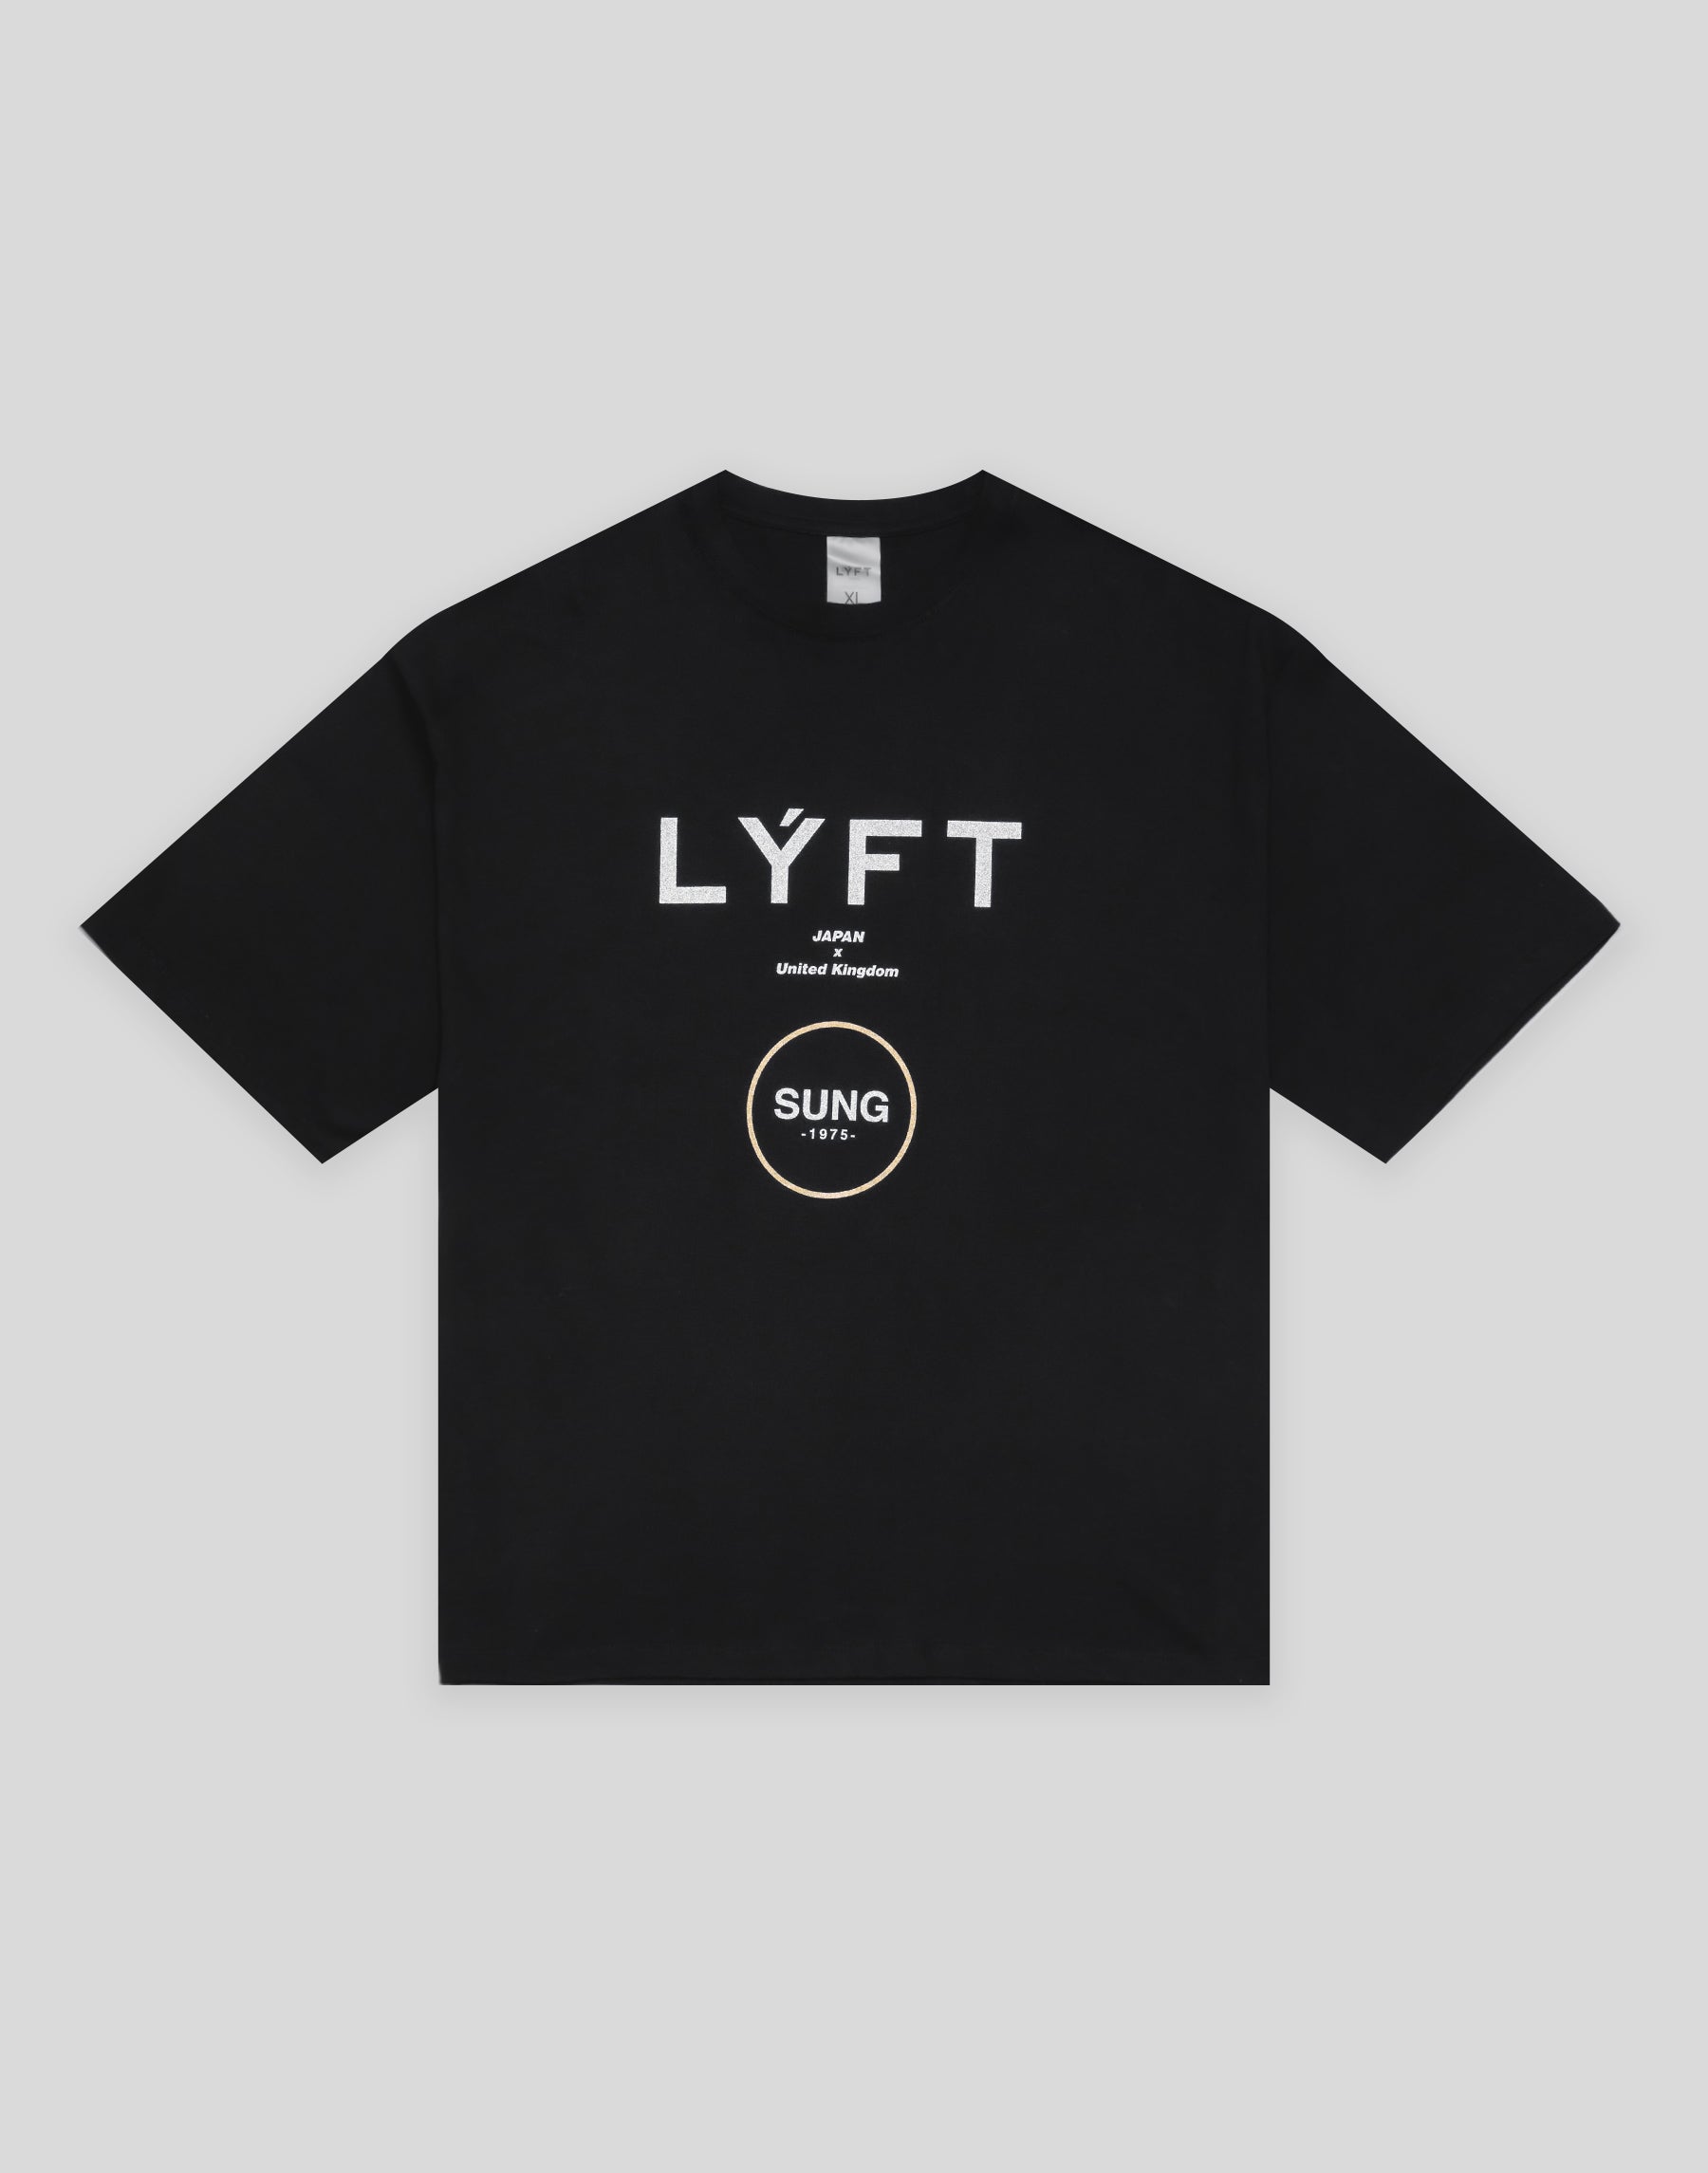 【美品】人気のLYFT Tシャツ #ブラック #限定 #SUNG